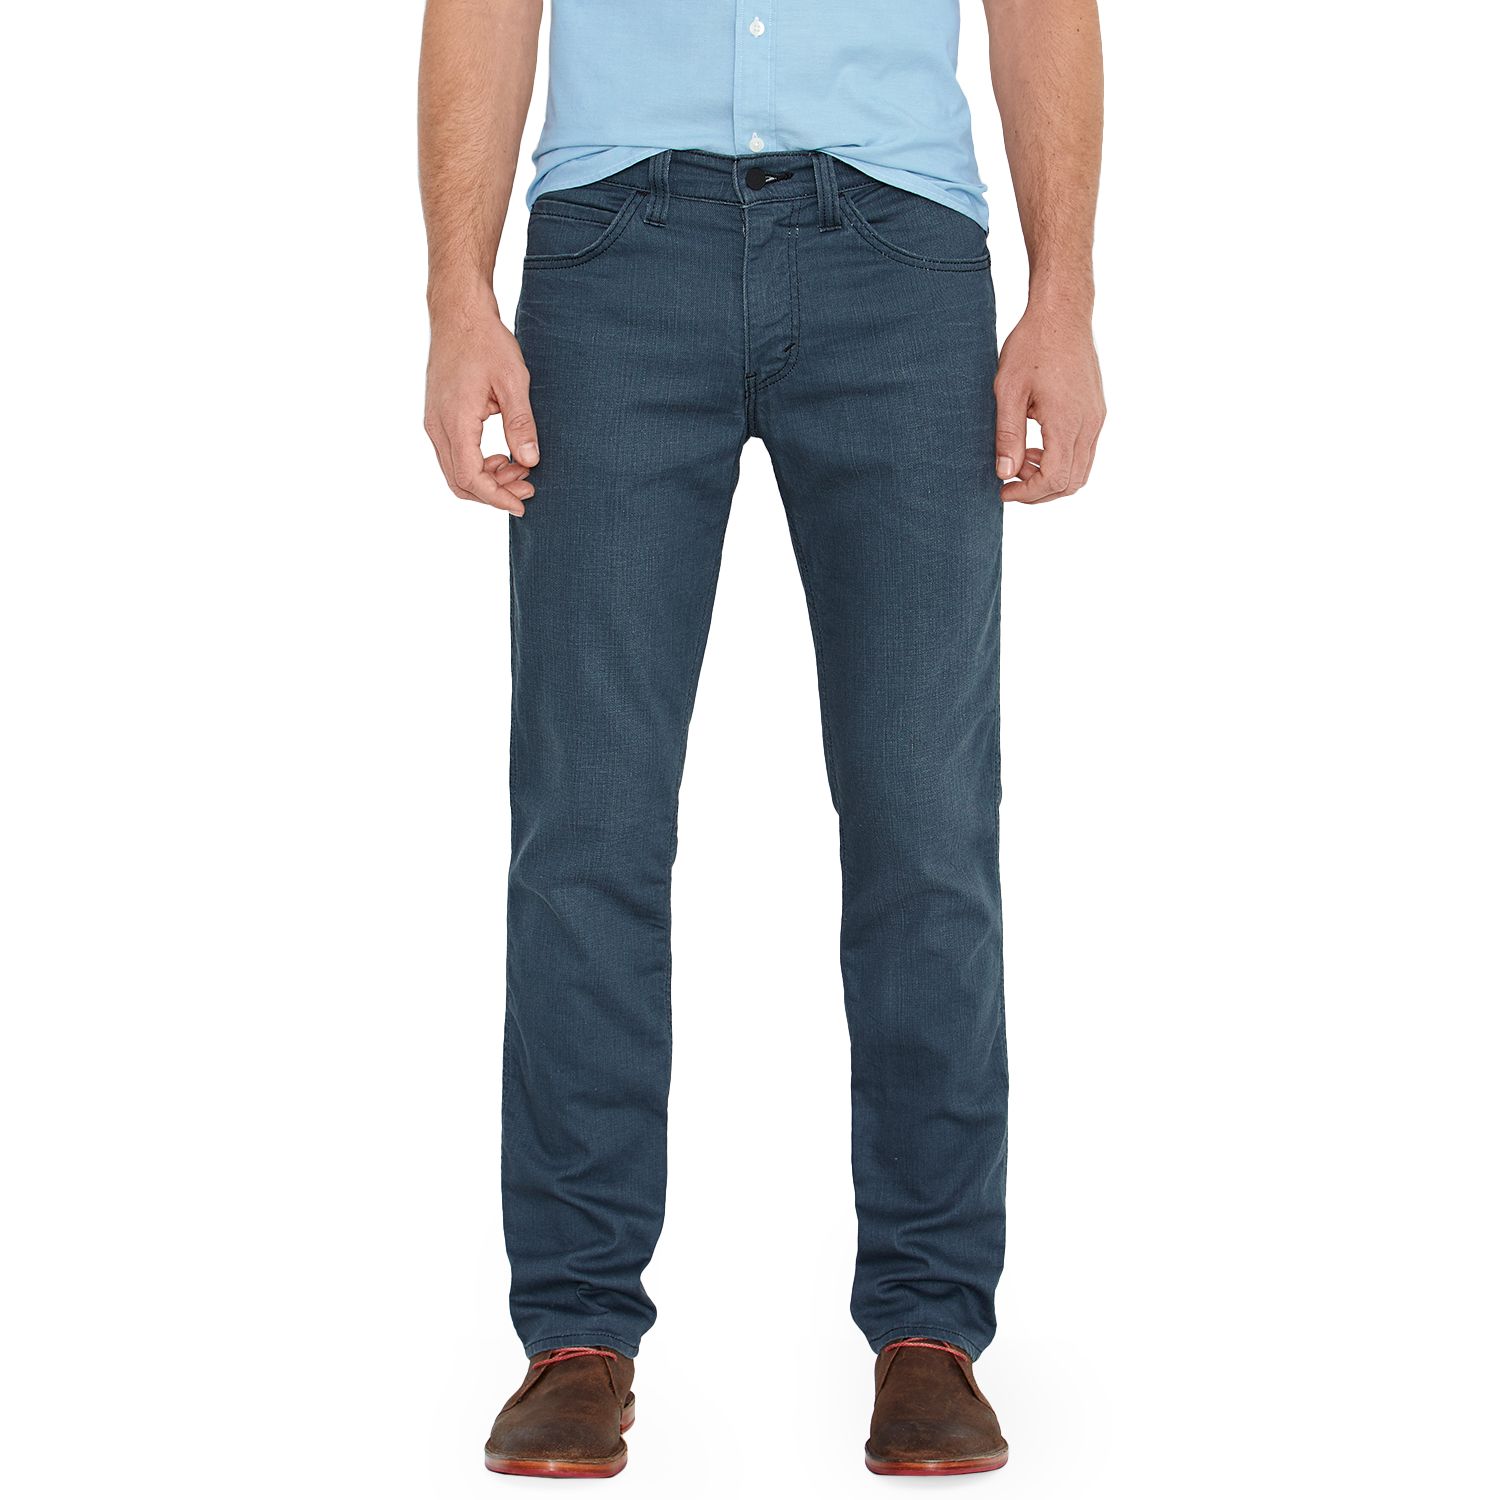 Levi's 511 Slim Fit Jeans - Line 8 - Men